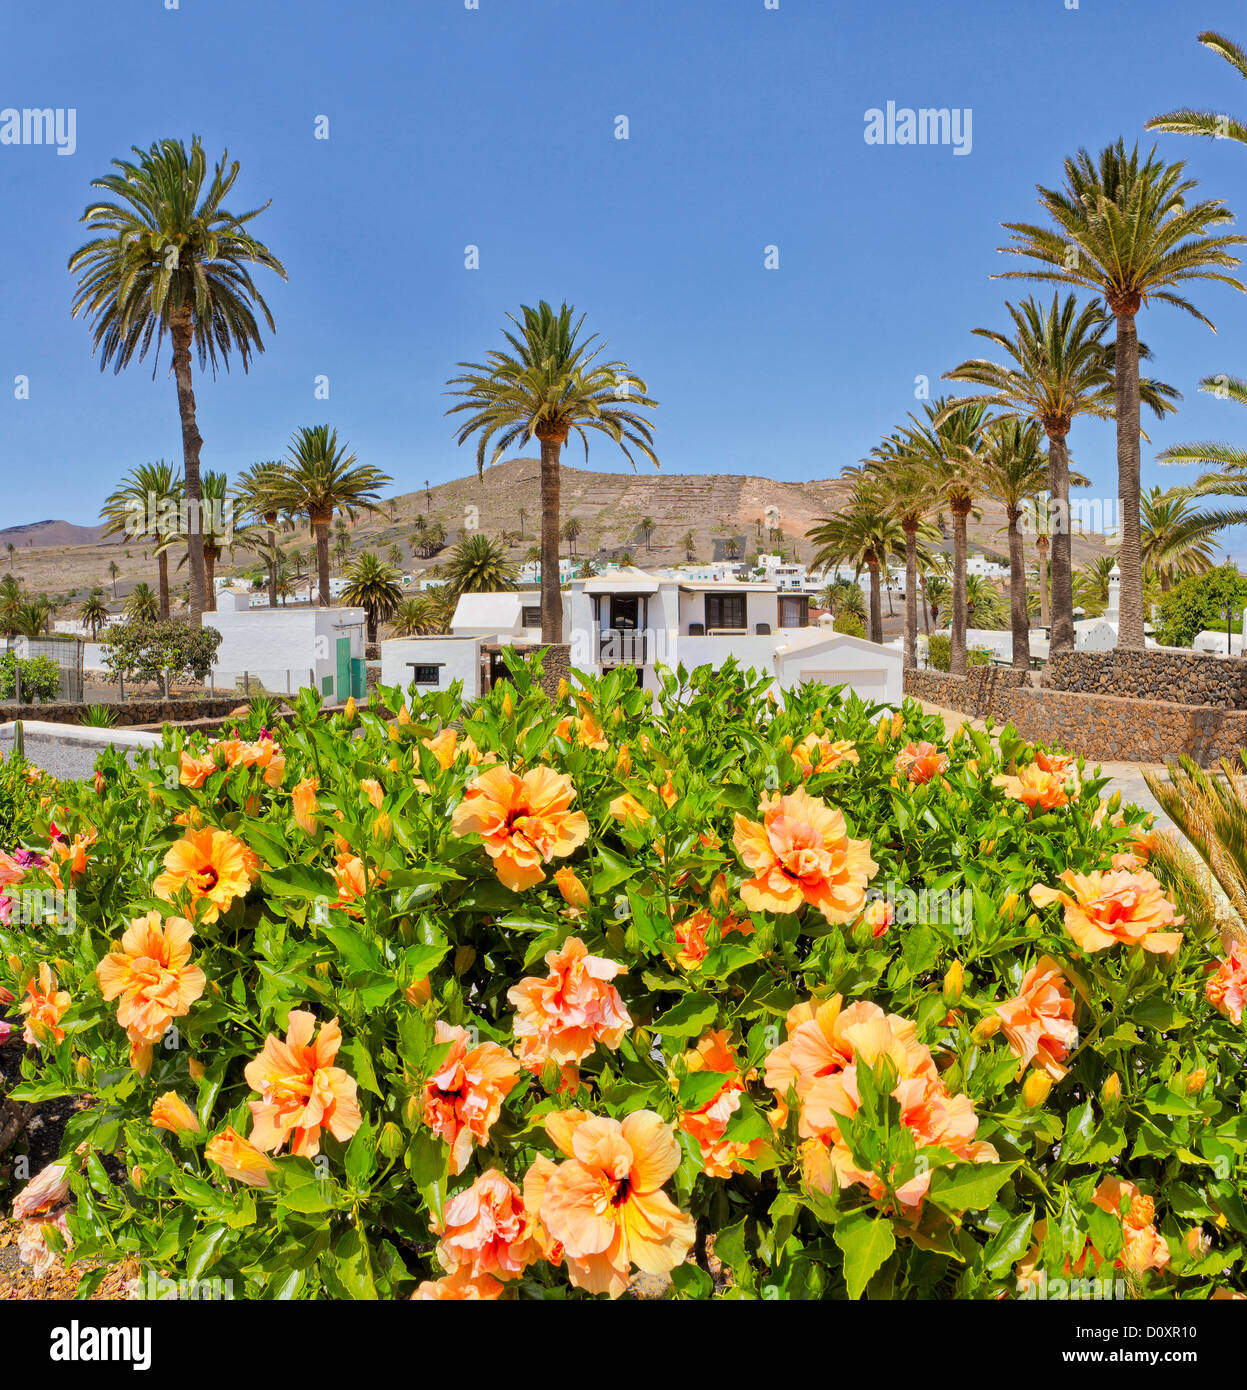 L'Espagne, Lanzarote, Haria, village de la 1000 palmiers, ville, village, fleurs, arbres, l'été, montagnes, collines, îles Canaries Banque D'Images